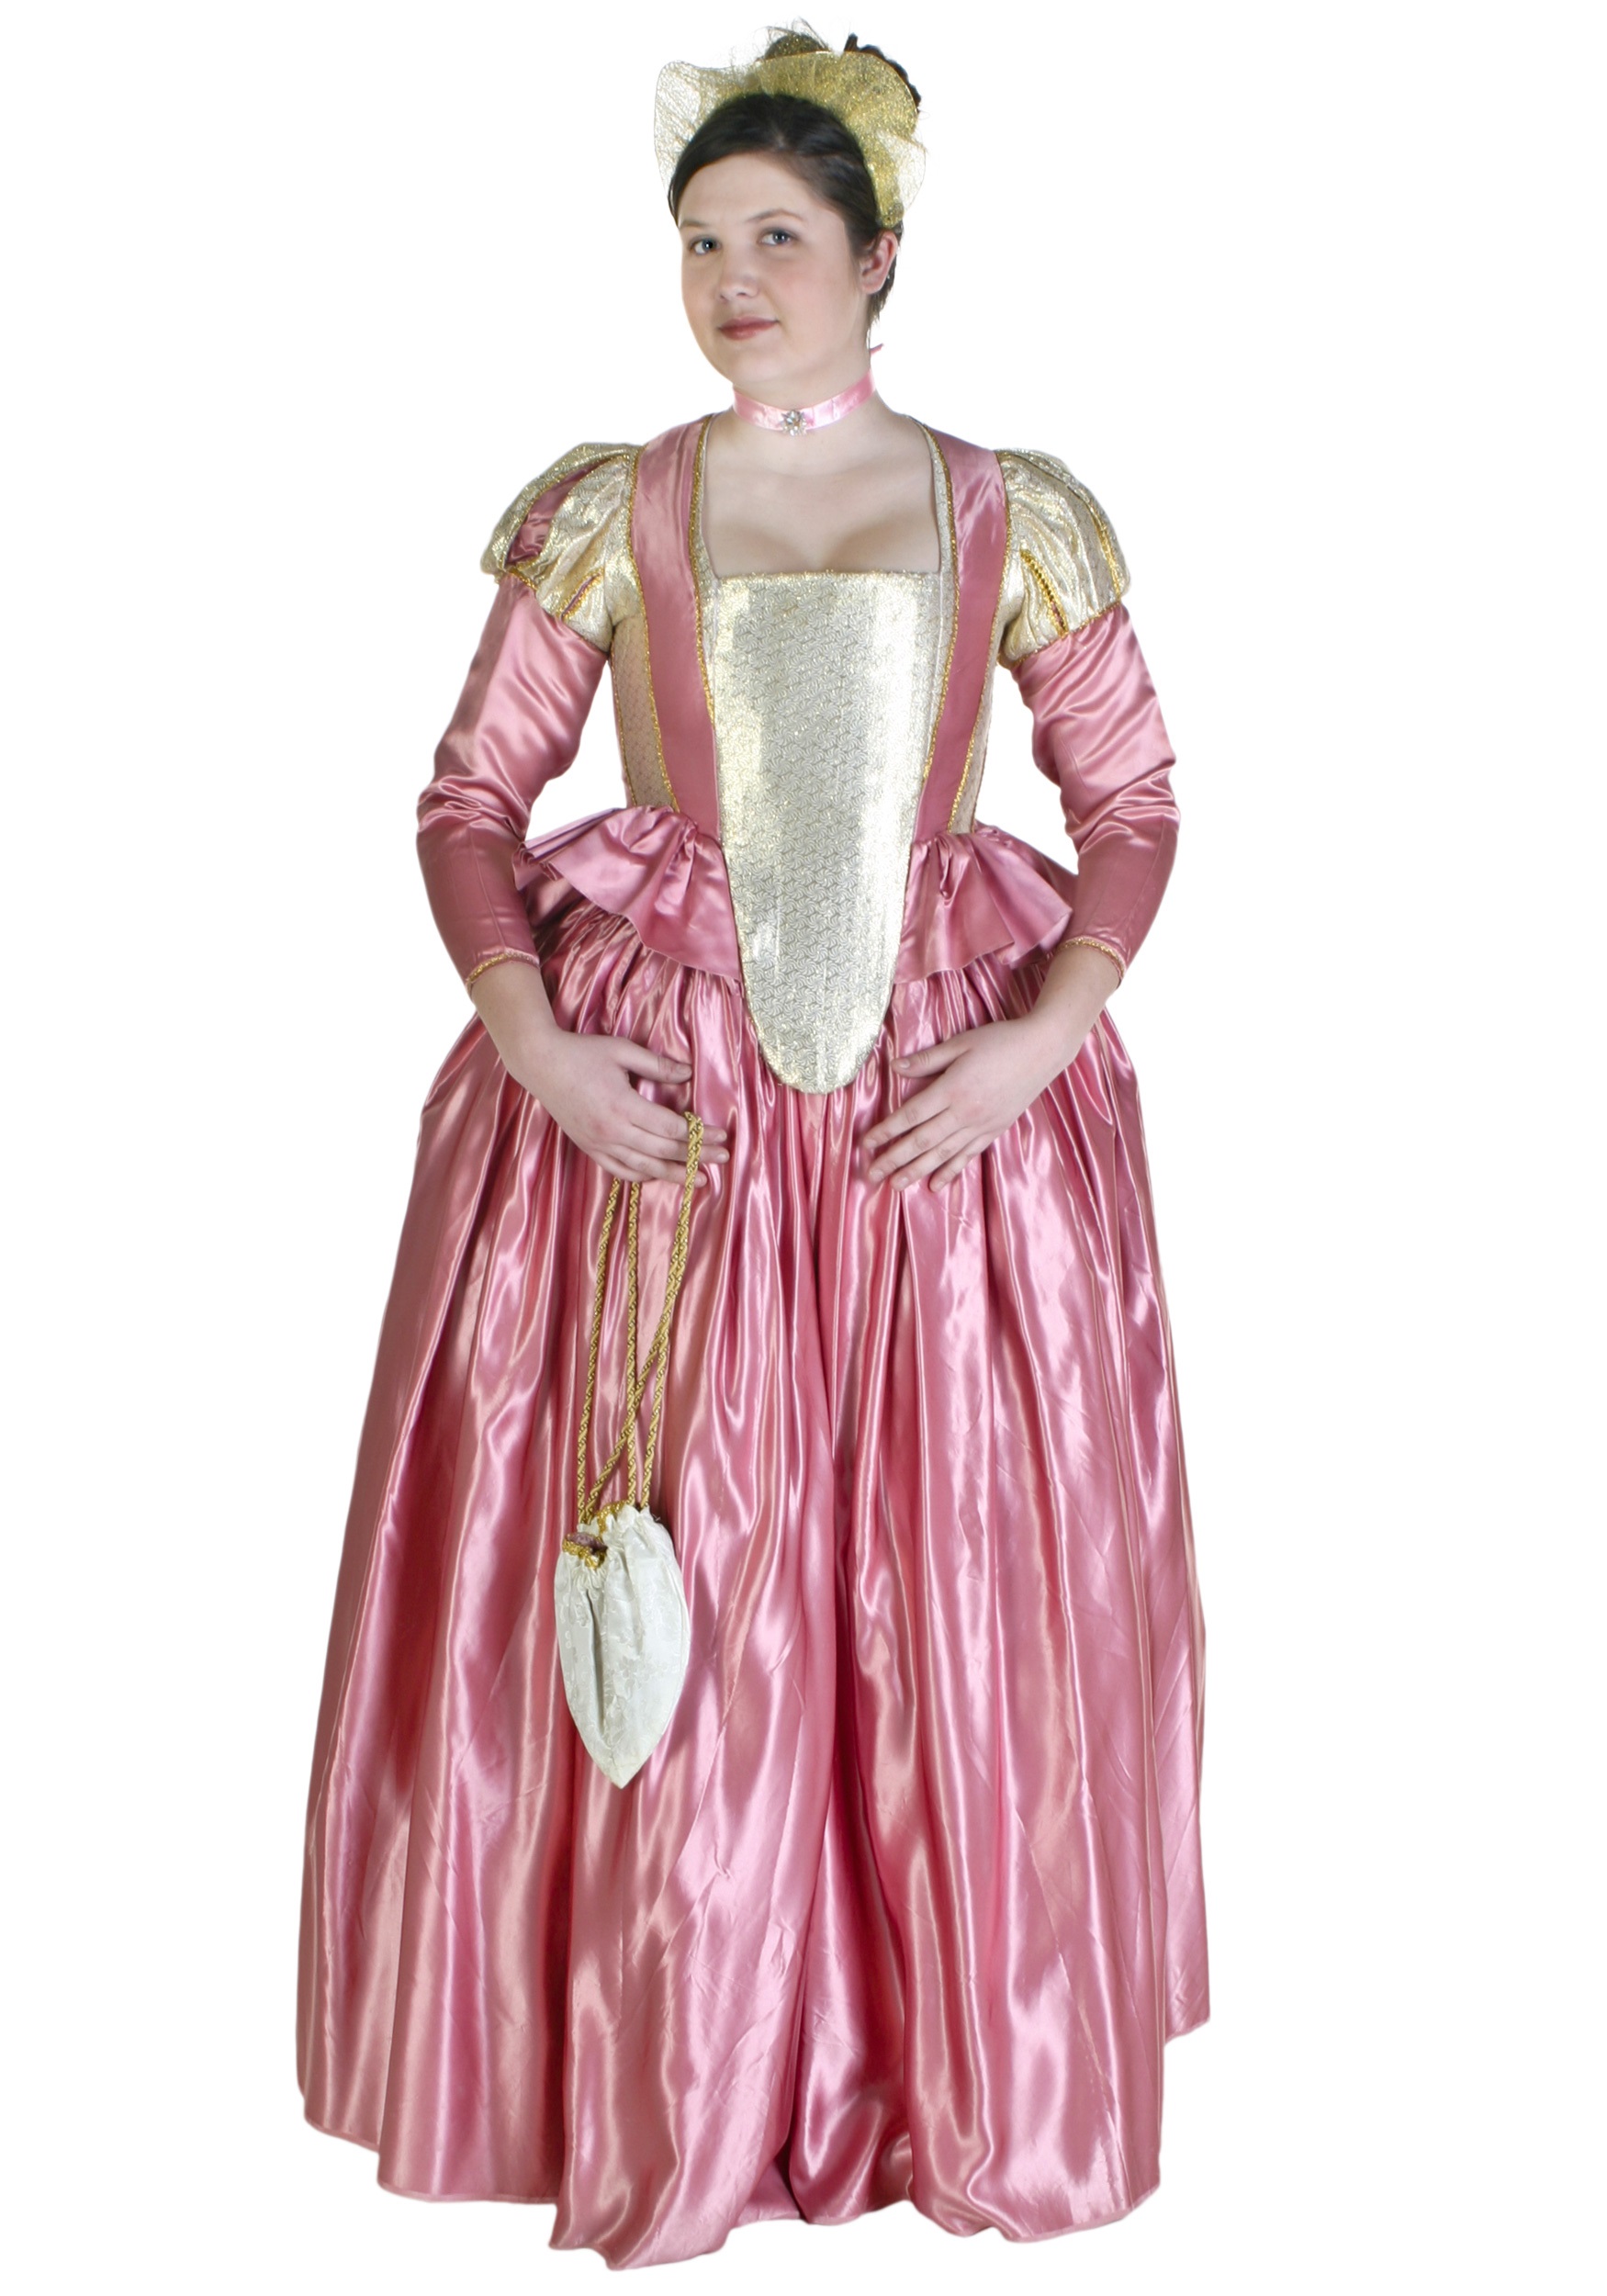 Victorian Queen Elizabeth Tudor Period Tudor Dress Cosplay Costume Anne  Boleyn Style Red Dress From Other Boleyn Girl - Cosplay Costumes -  AliExpress